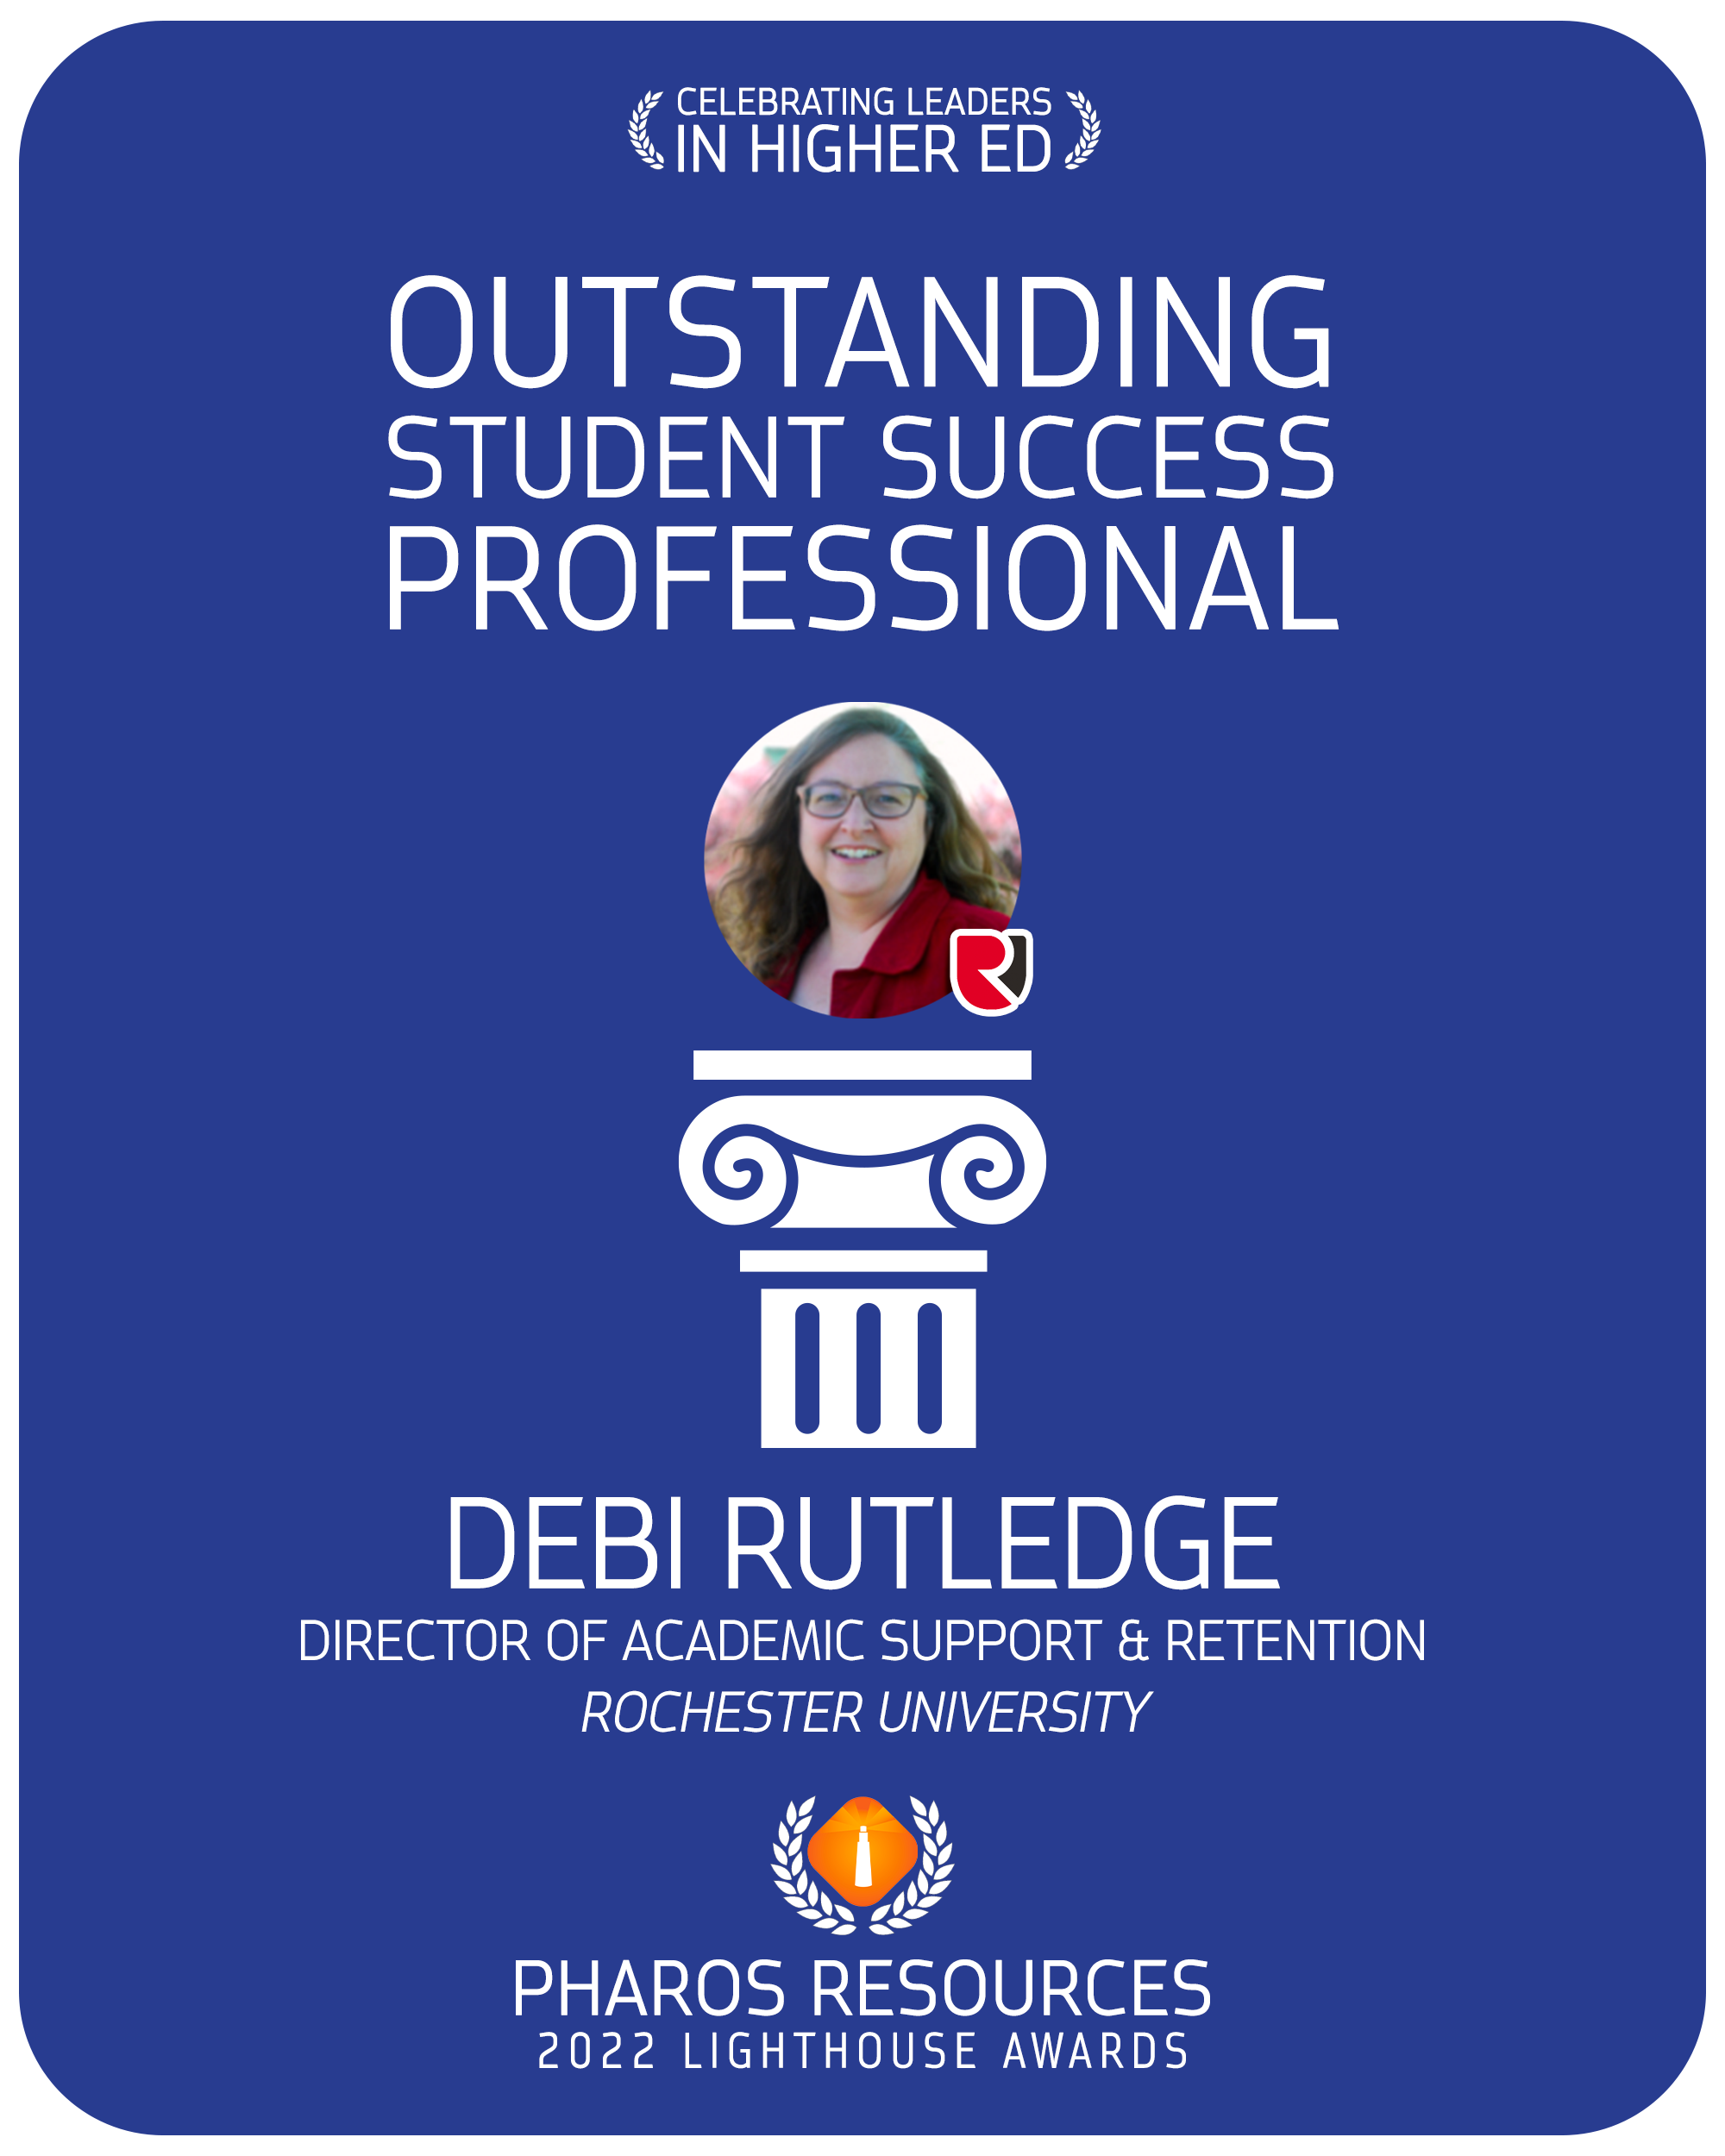 Debi Rutledge Rochester University Lighthouse Award 2022